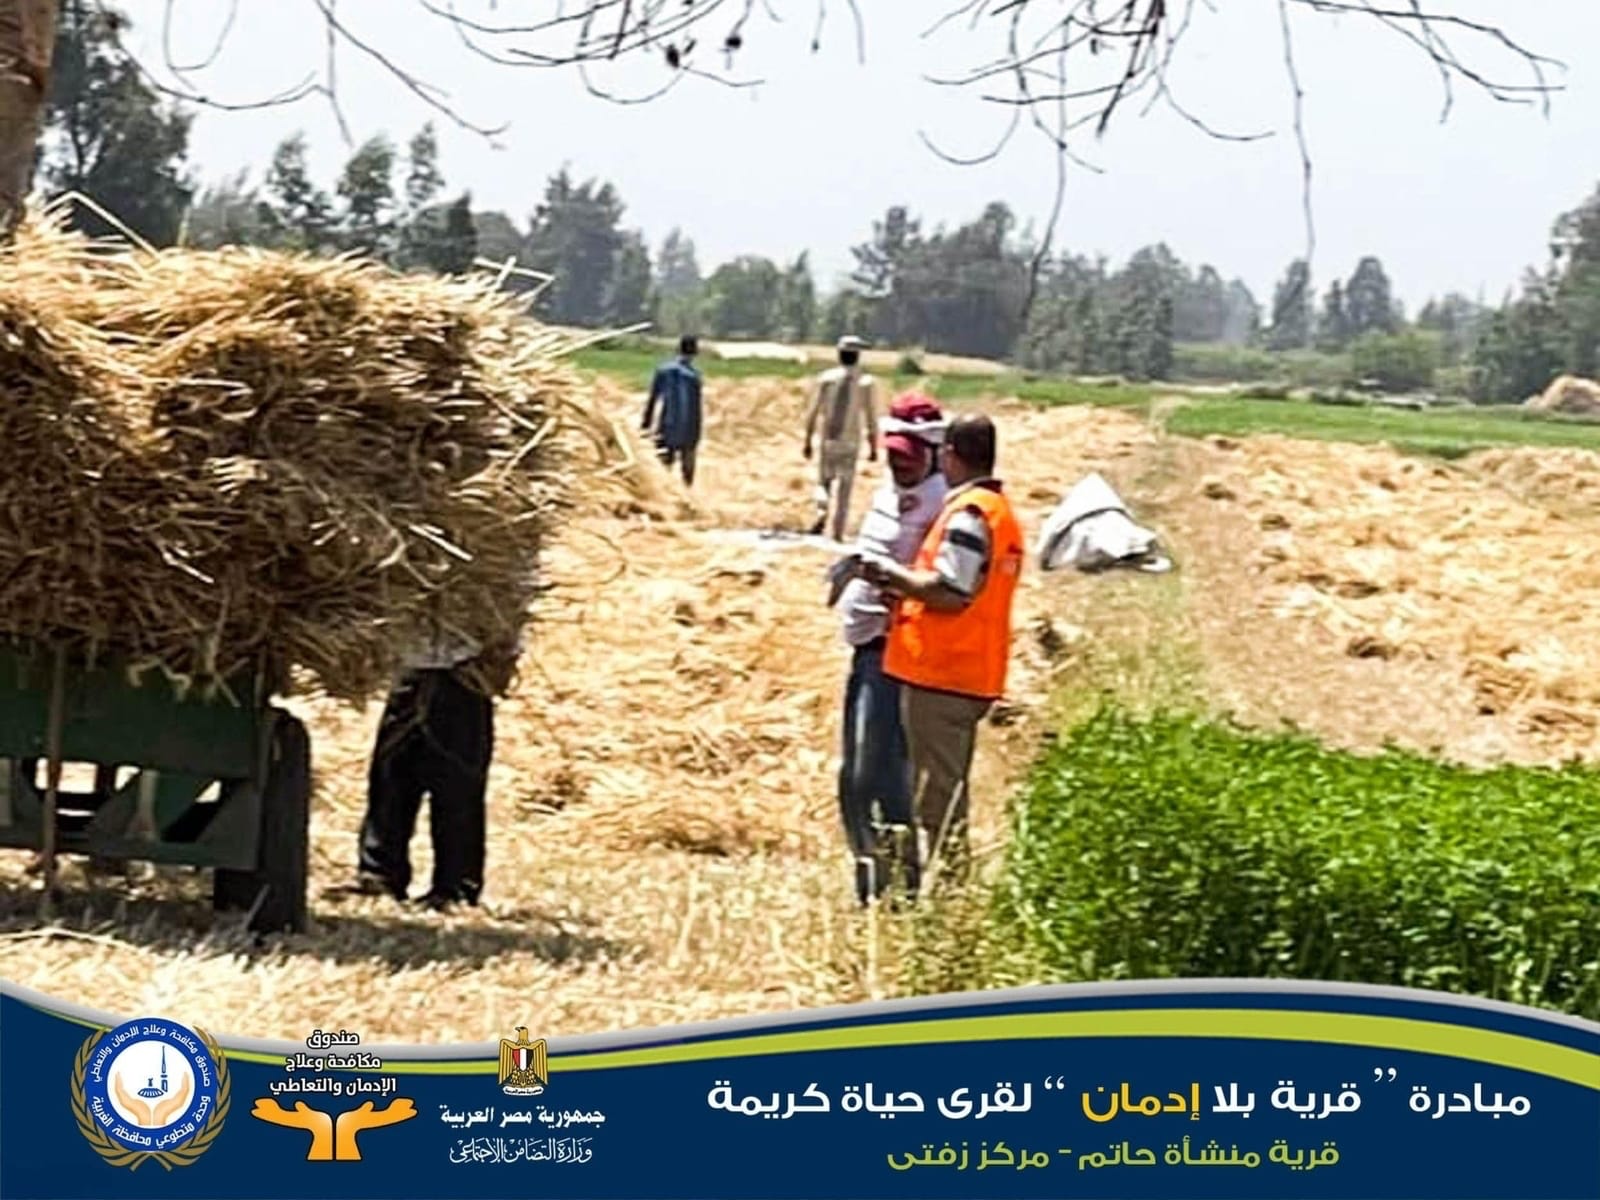 «مكافحة الإدمان» يطلق مبادرة توعوية وعلاجية للعمال بالأراضي الزراعية